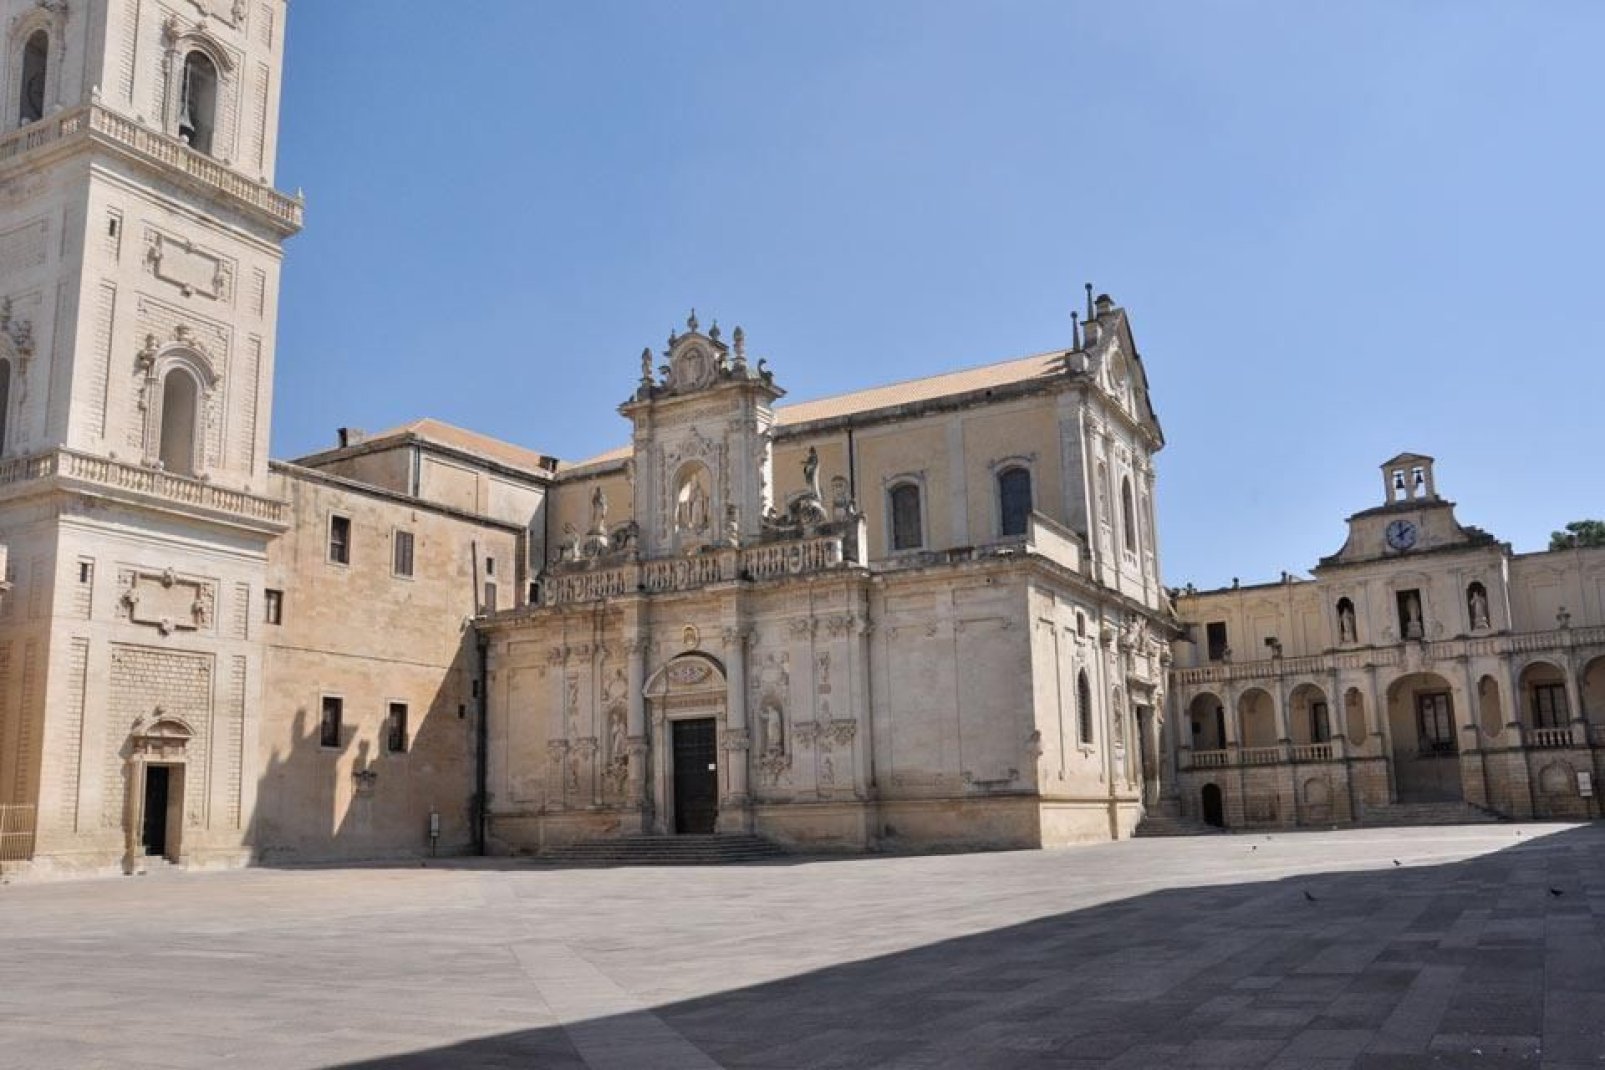 Das Bistum, angrenzende an der Kathedrale, ist der Wohnsitz des Bischofs von Lecce. Dieser Palast wurde im 15. Jahrhundert errichtet.